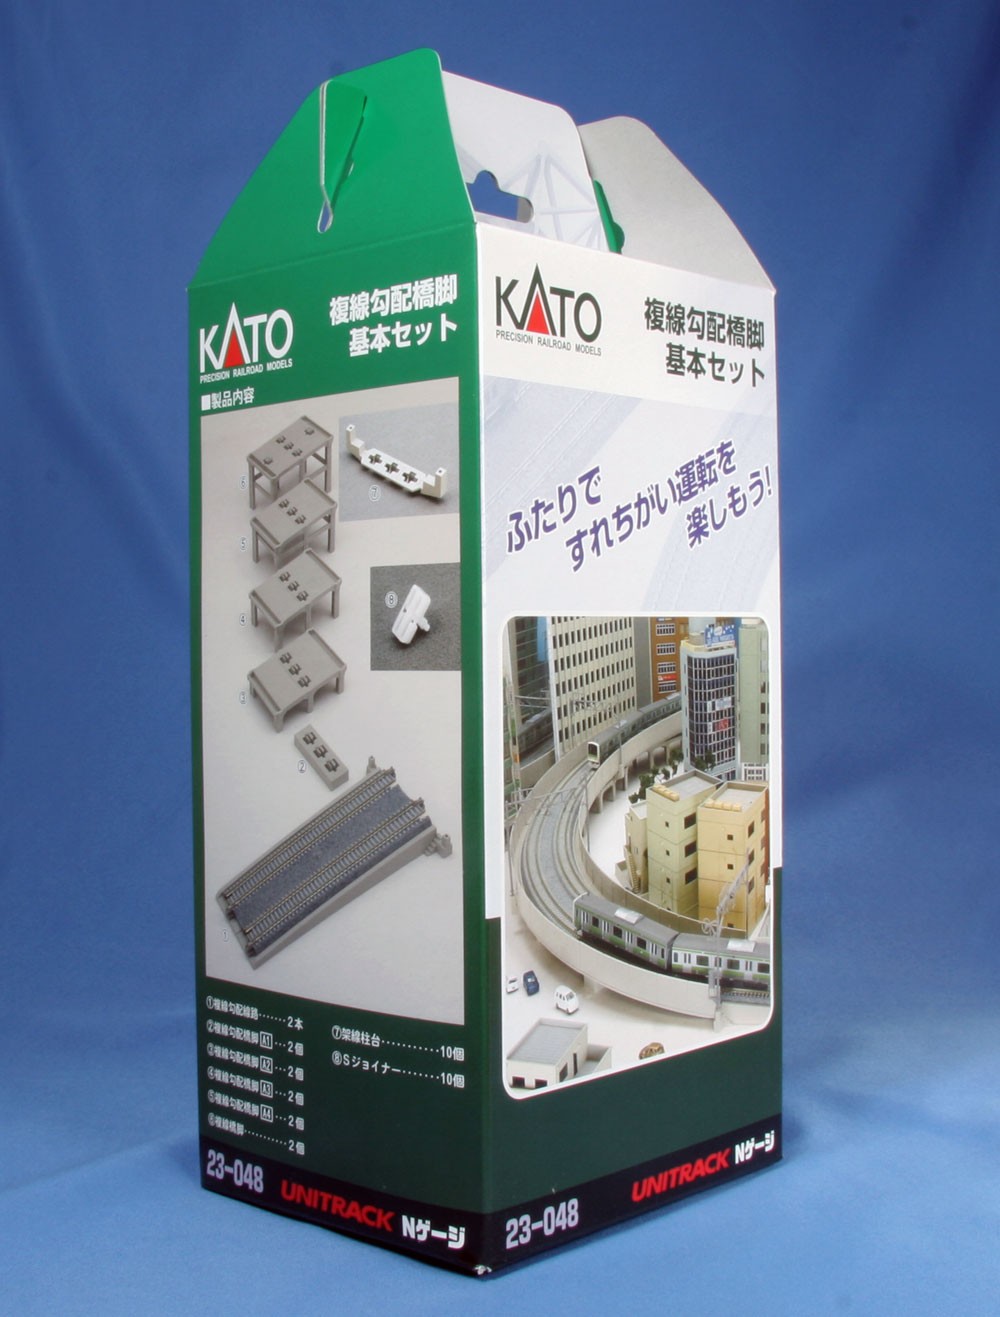 Kato N - Conjunto de Píeres para Inclinação (incline pier set) : 23-048